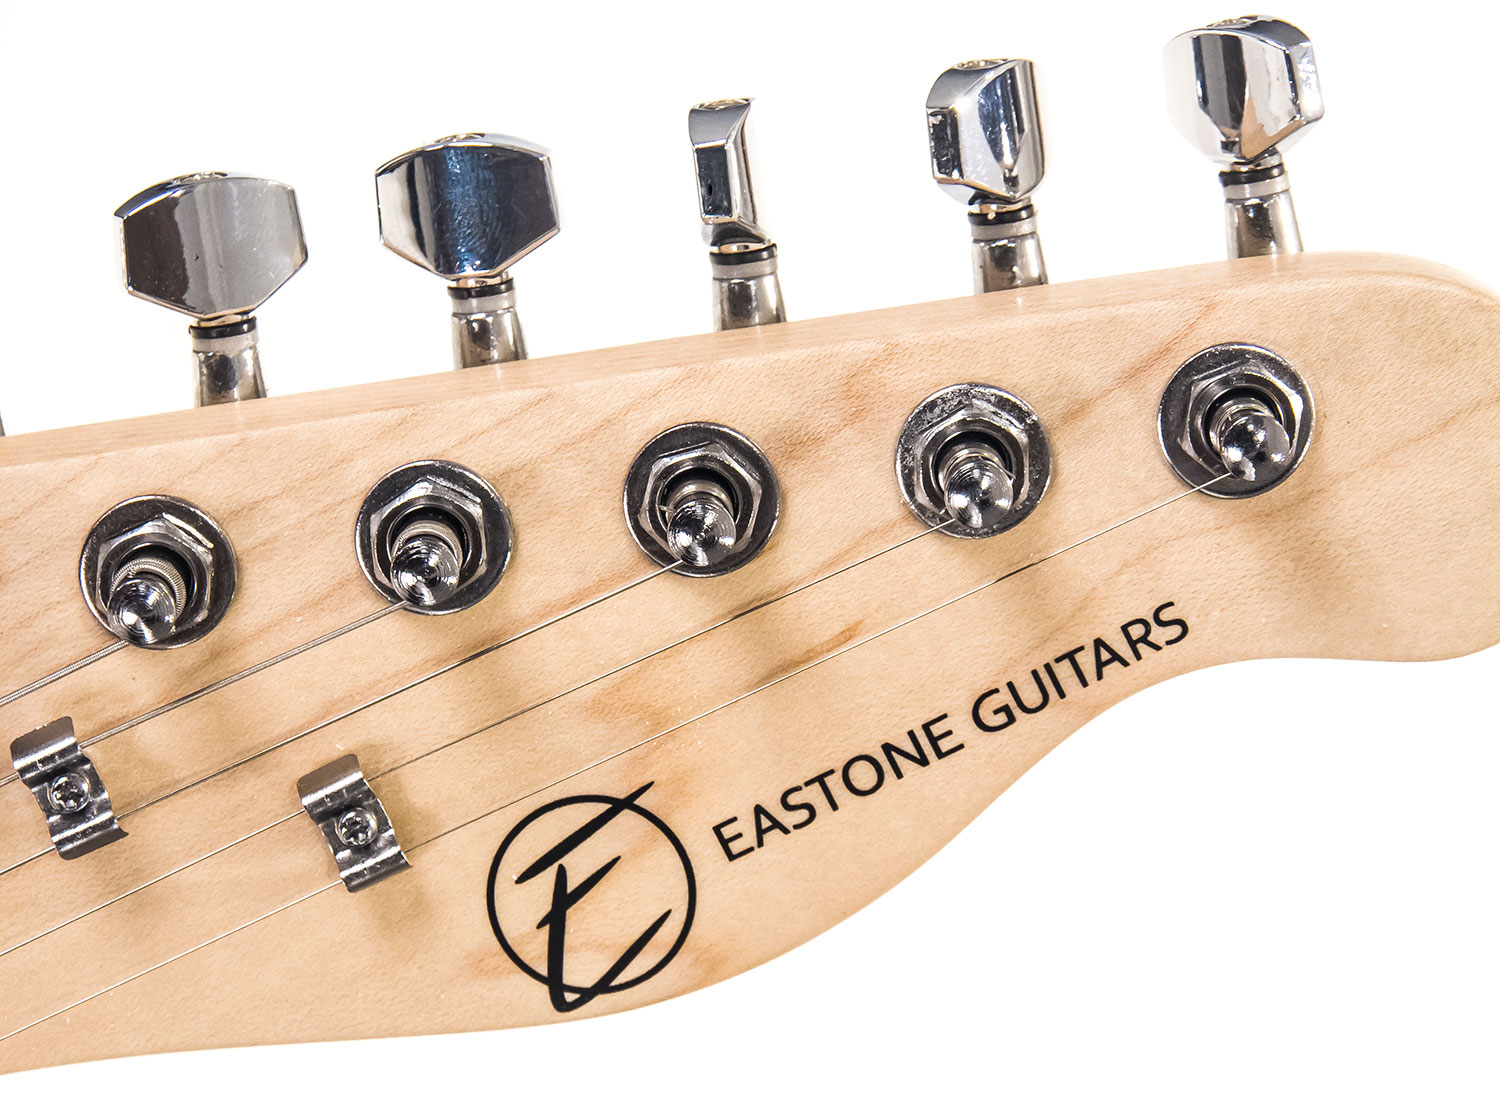 Eastone Tl70 Ss Ht Pur - Metallic Light Blue - Televorm elektrische gitaar - Variation 3